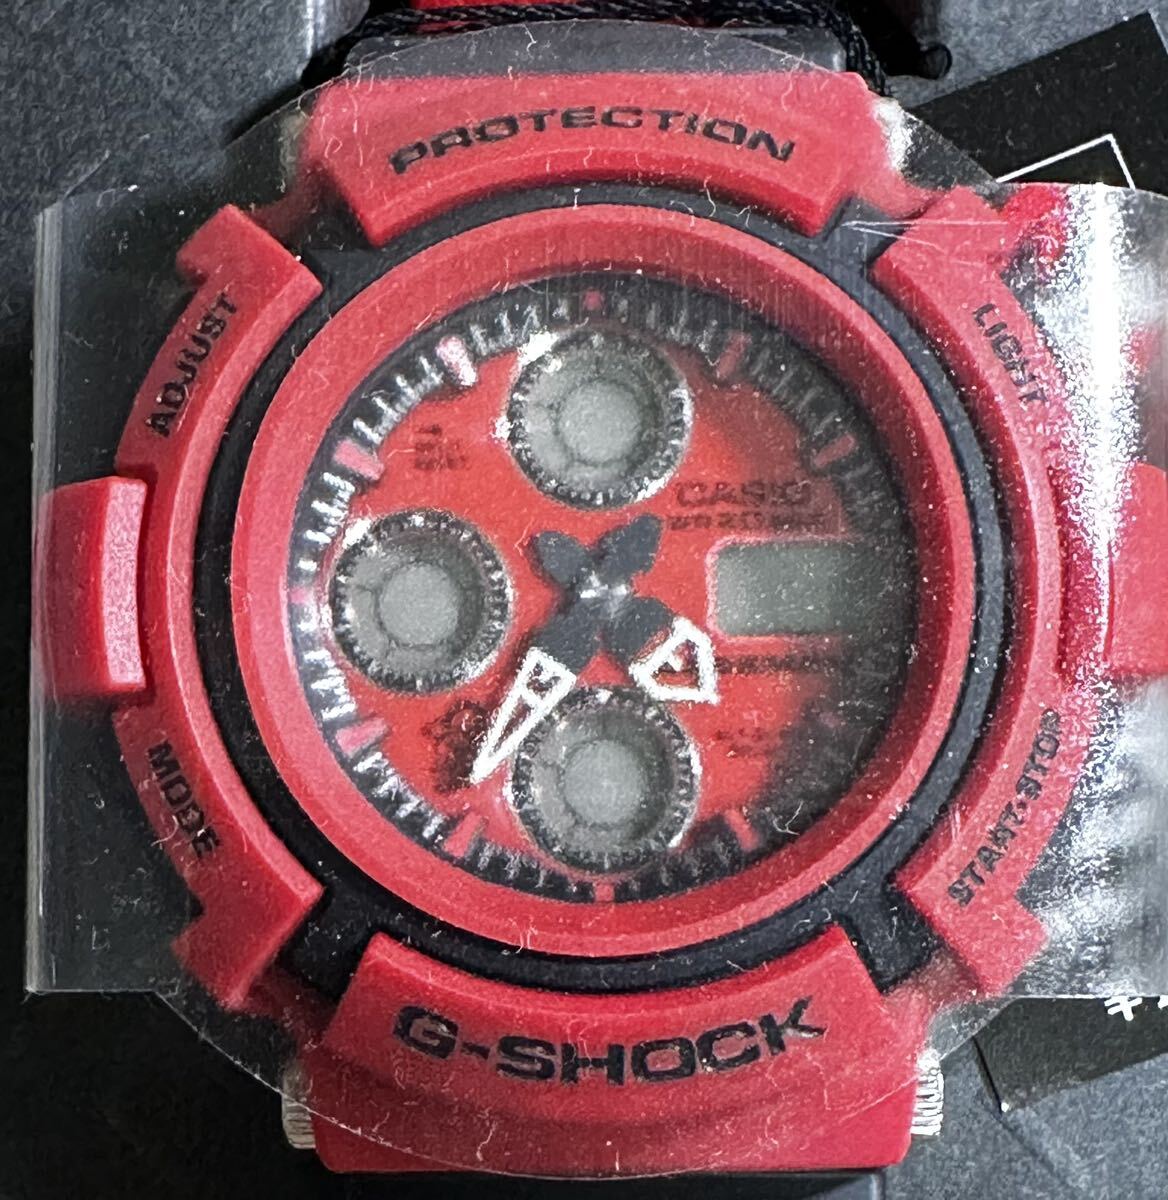 ★G-Shock Enduro de Touquet Red AW-571E-4A3T Новый, Неиспользованный, Ремонтопригодный ★?